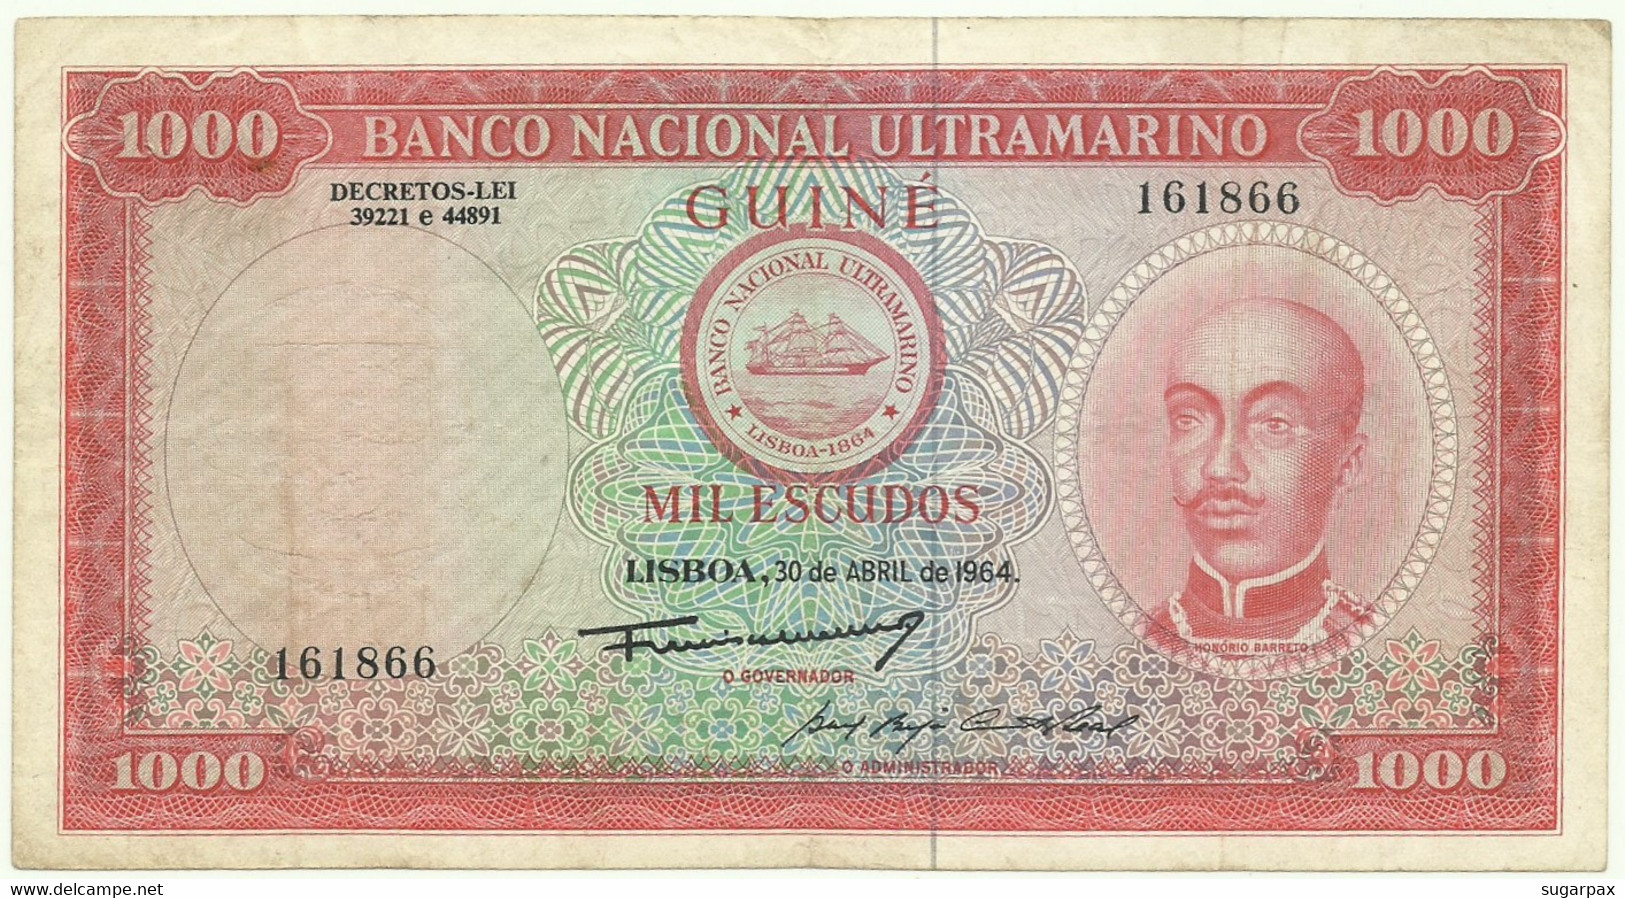 Guiné-Bissau - 1000 Escudos - 30.4.1964 - Pick 43 - ( 175 X 95 ) Mm - Honório Barreto - Portuguese Guinea - 1.000 - Guinea-Bissau